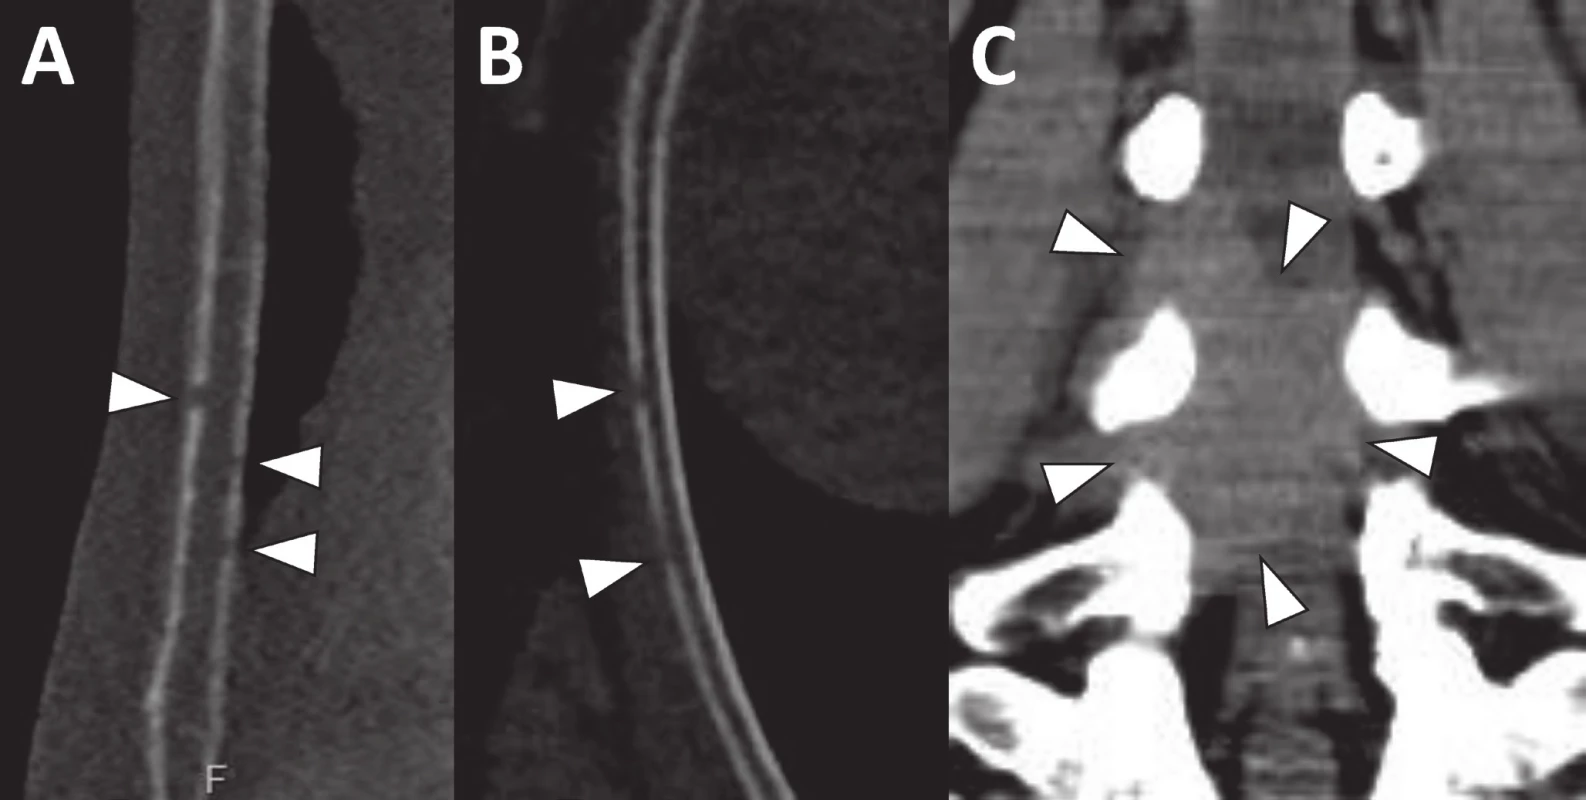 Drobná osteolytická ložiska ve sternu (a) a žebru (b) velikosti 1–2 mm jsou díky velkému denzitnímu rozdílu mezi kortikou a měkkou tkání s jistotou detekovatelná i na CT vyšetření provedeném se srovnatelnou radiační zátěží jako RTG
Na CT se rovněž zobrazila měkkotkáňová formace zasahující do páteřního kanálu v bederní oblasti (c).